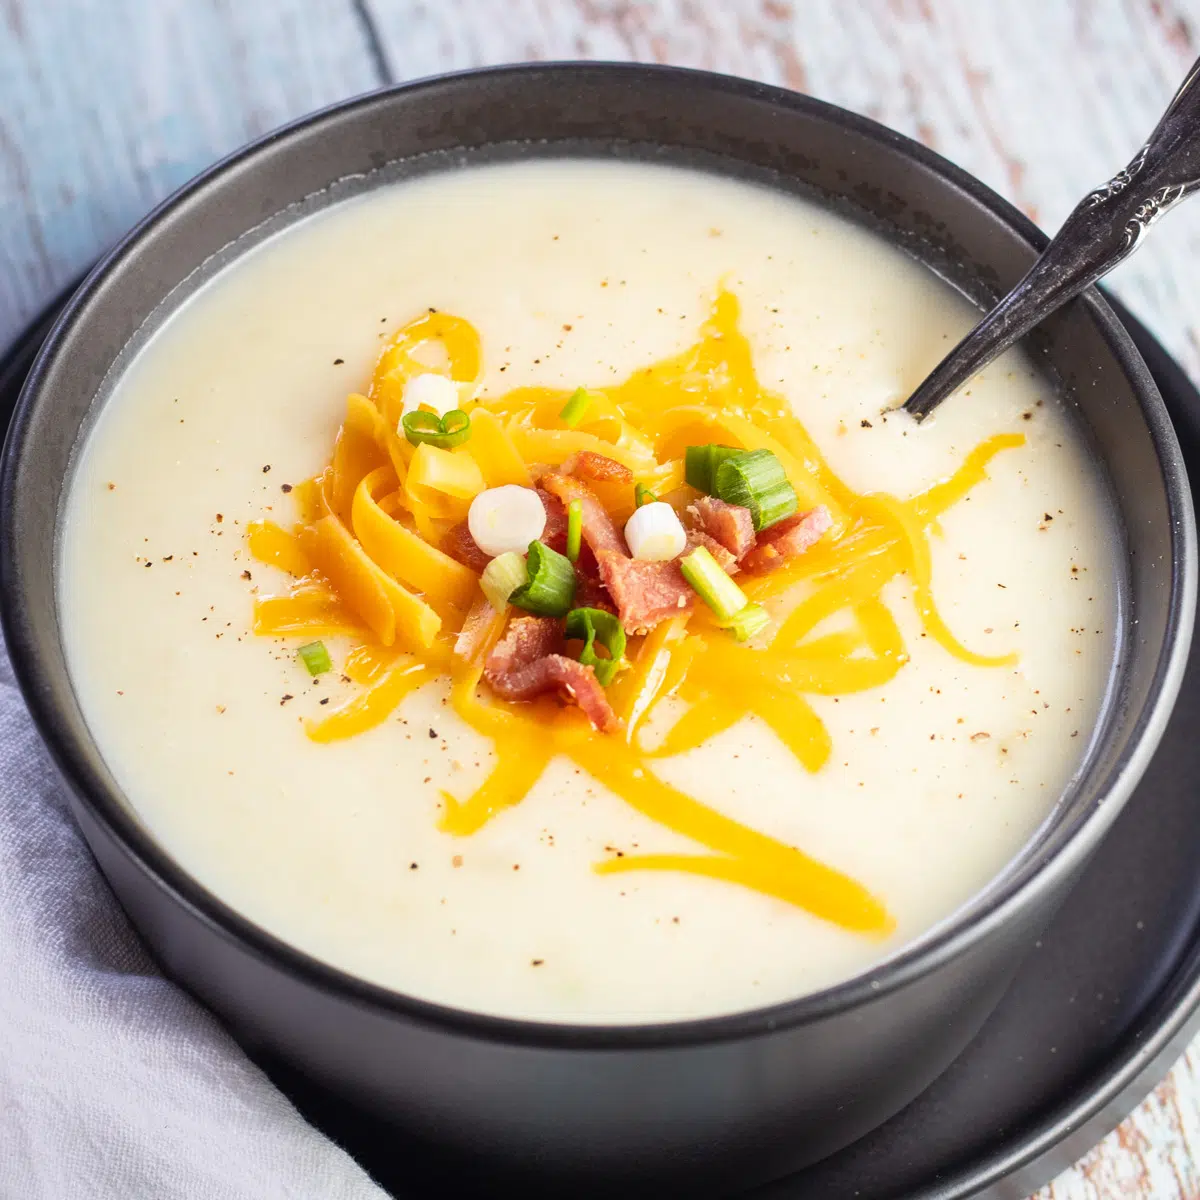 Sopa de papa de 4 ingredientes servida con queso cheddar rallado, tocino crujiente y cebolla verde en rodajas.